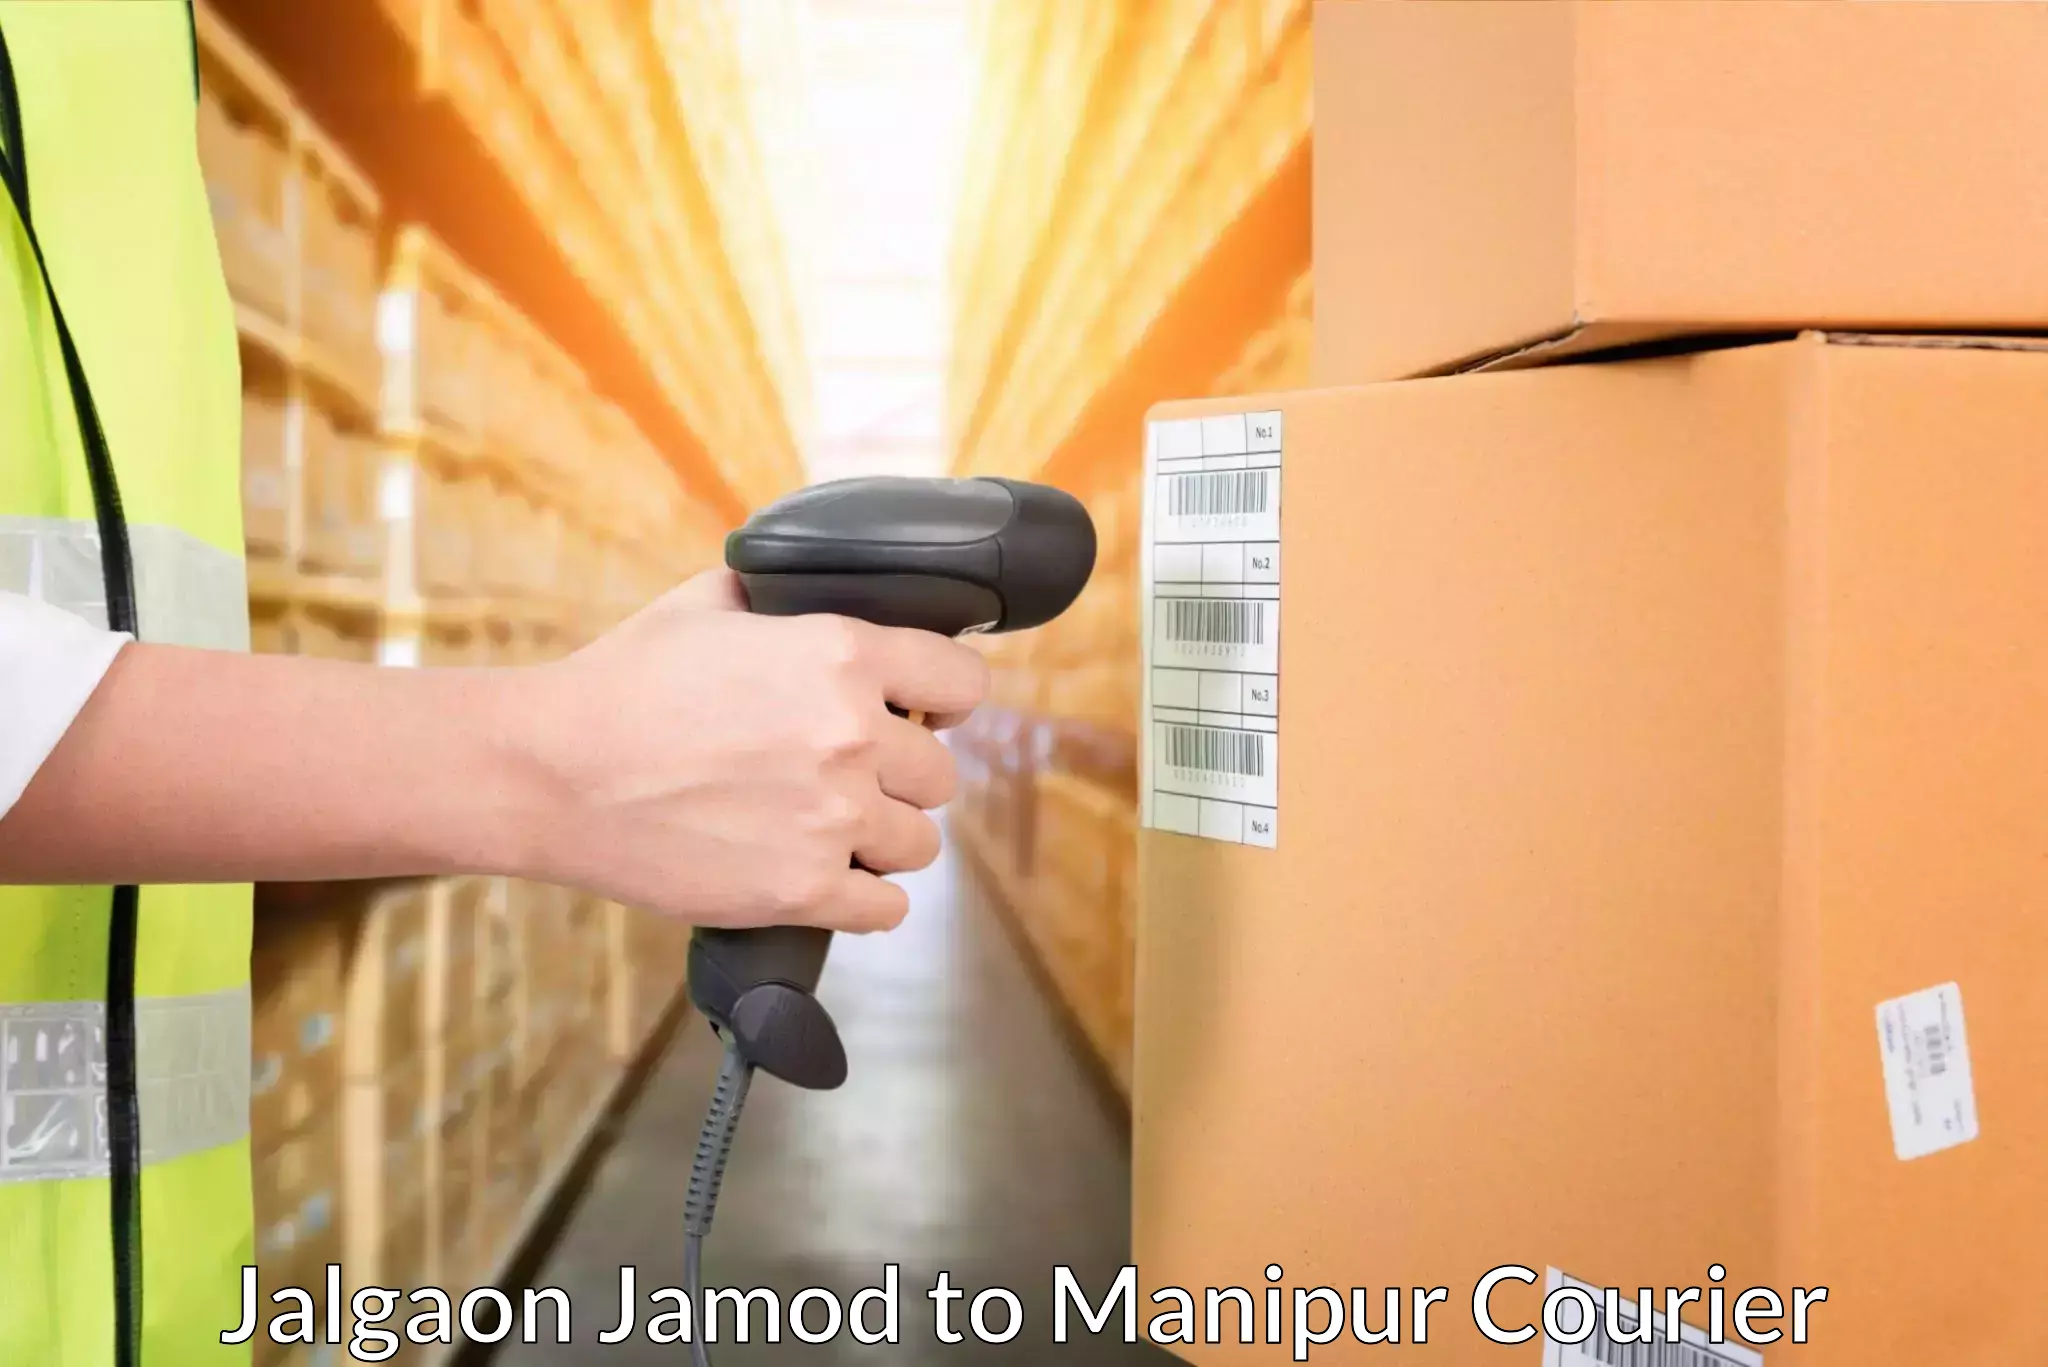 Nationwide parcel services Jalgaon Jamod to Ukhrul